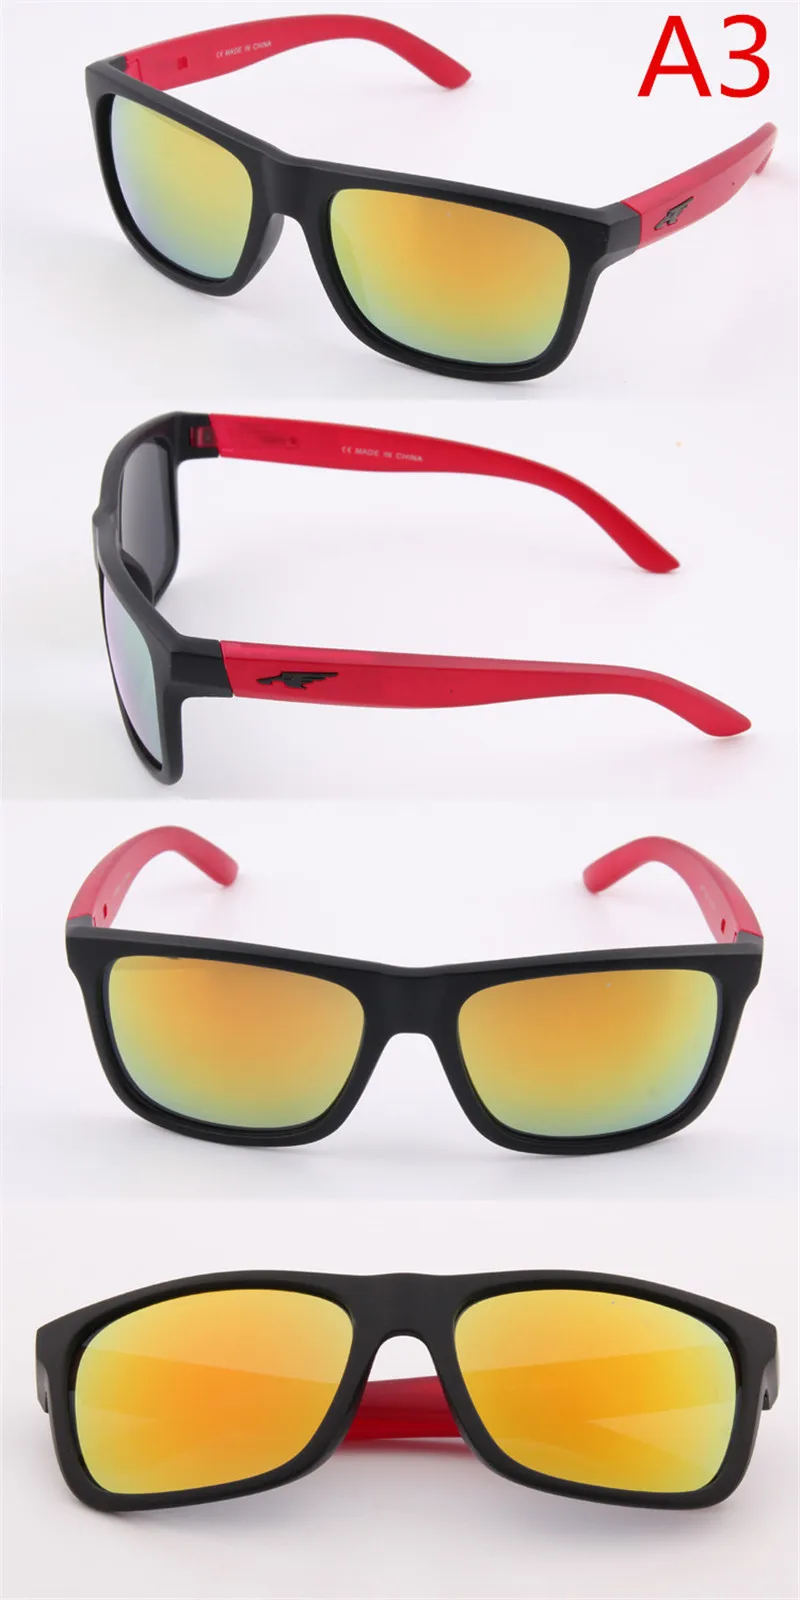 Солнцезащитные очки Для мужчин Для женщин вождения квадратная рамка солнцезащитные очки мужские очки UV400 gafas de sol de los hombres; Цвета: okulary солнцезащитные очки мужские солнцезащитные очки